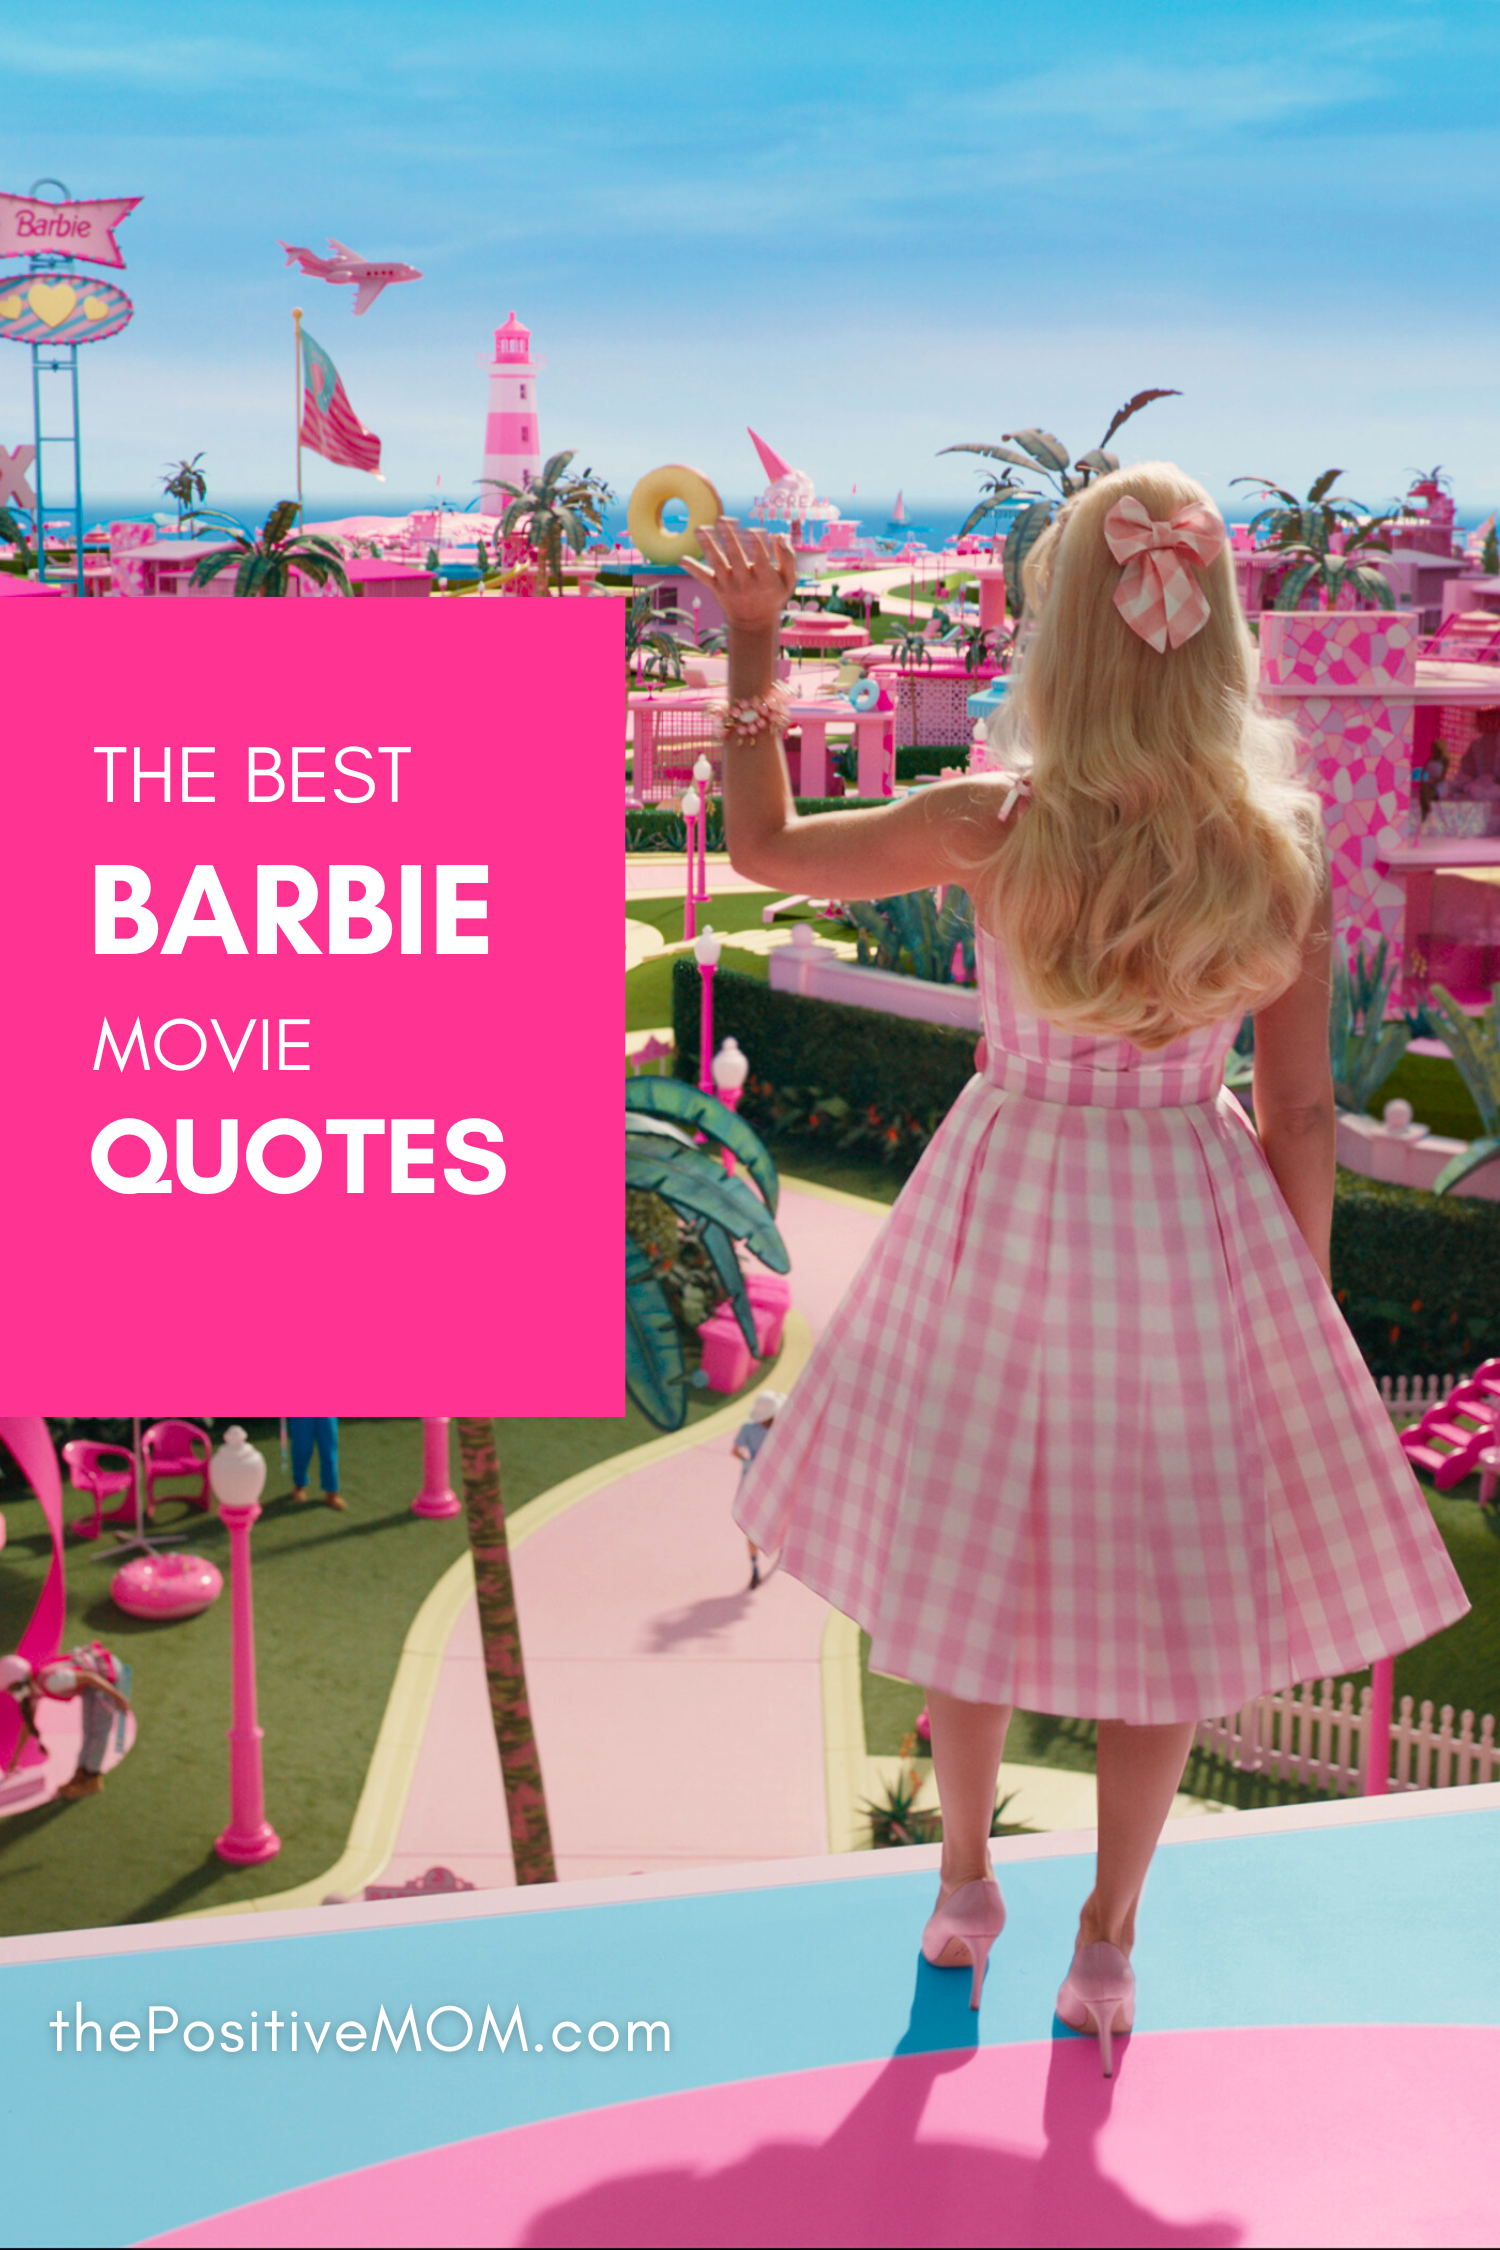 Please Don't Make a 'Barbie' Sequel About Ken - The Atlantic